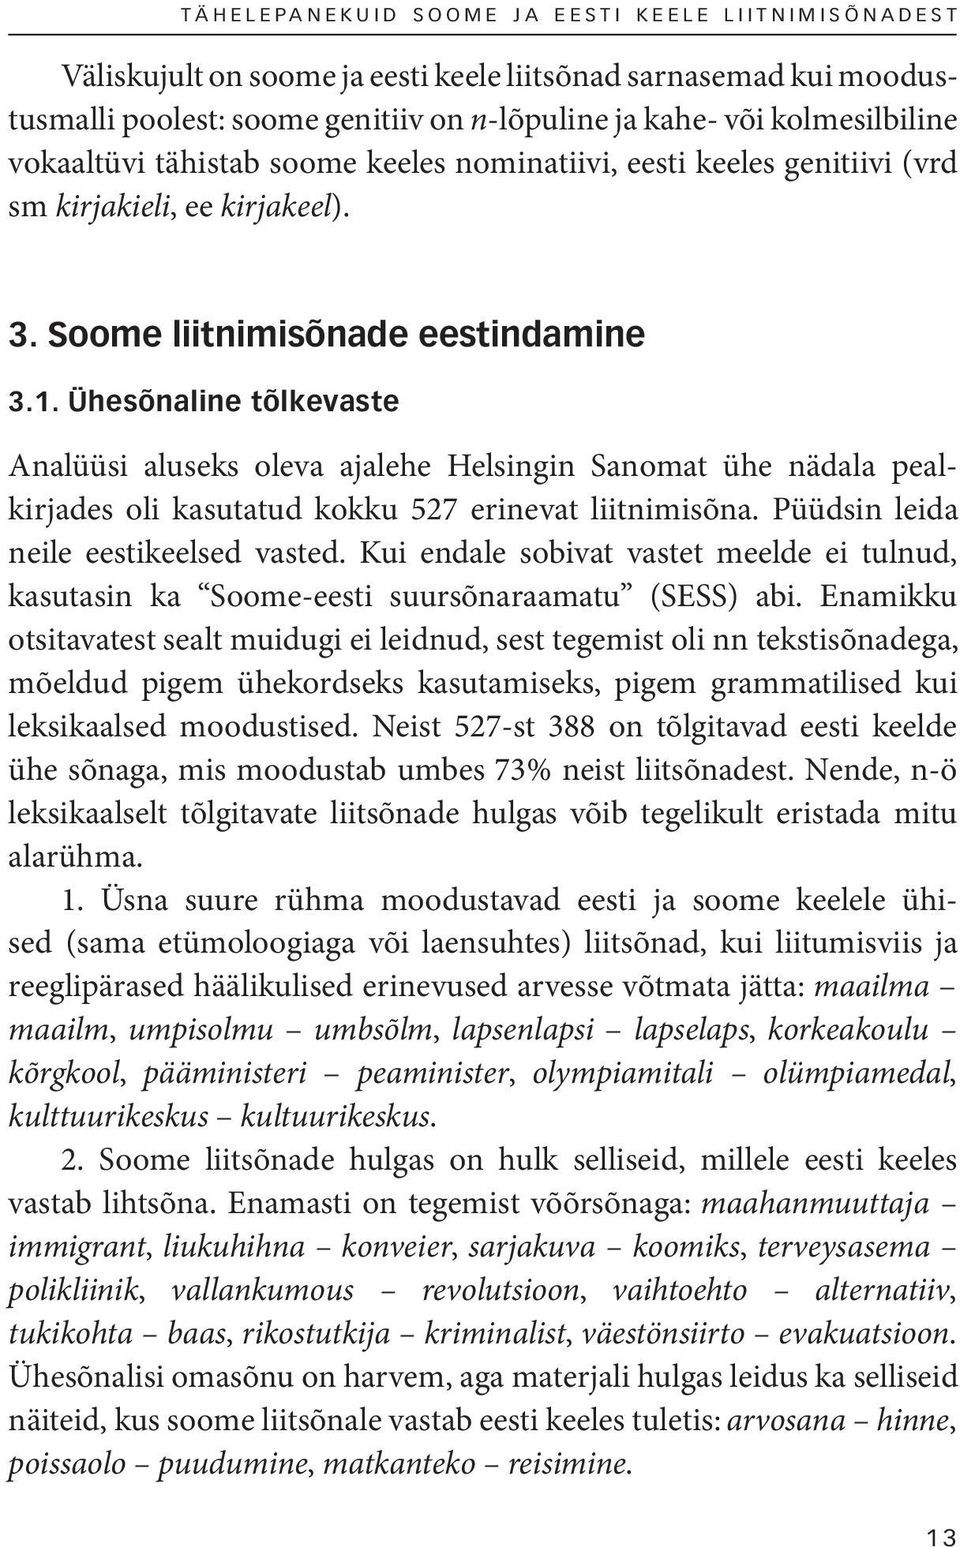 Ühesõnaline tõlkevaste Analüüsi aluseks oleva ajalehe Helsingin Sanomat ühe nädala pealkirjades oli kasutatud kokku 527 erinevat liitnimisõna. Püüdsin leida neile eestikeelsed vasted.